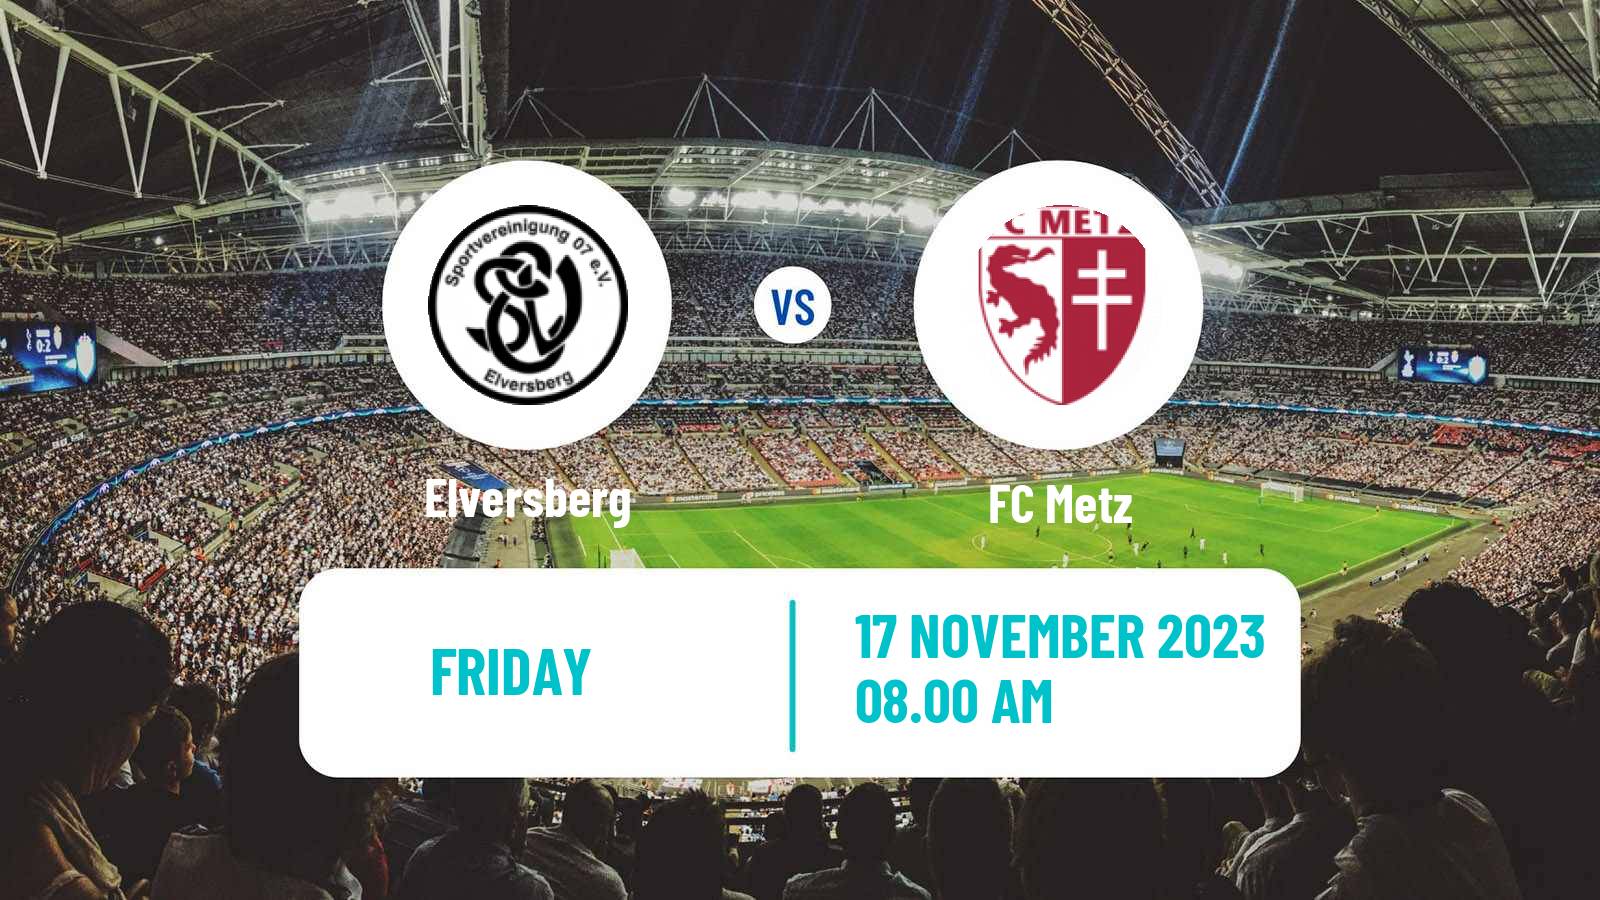 Soccer Club Friendly Elversberg - Metz